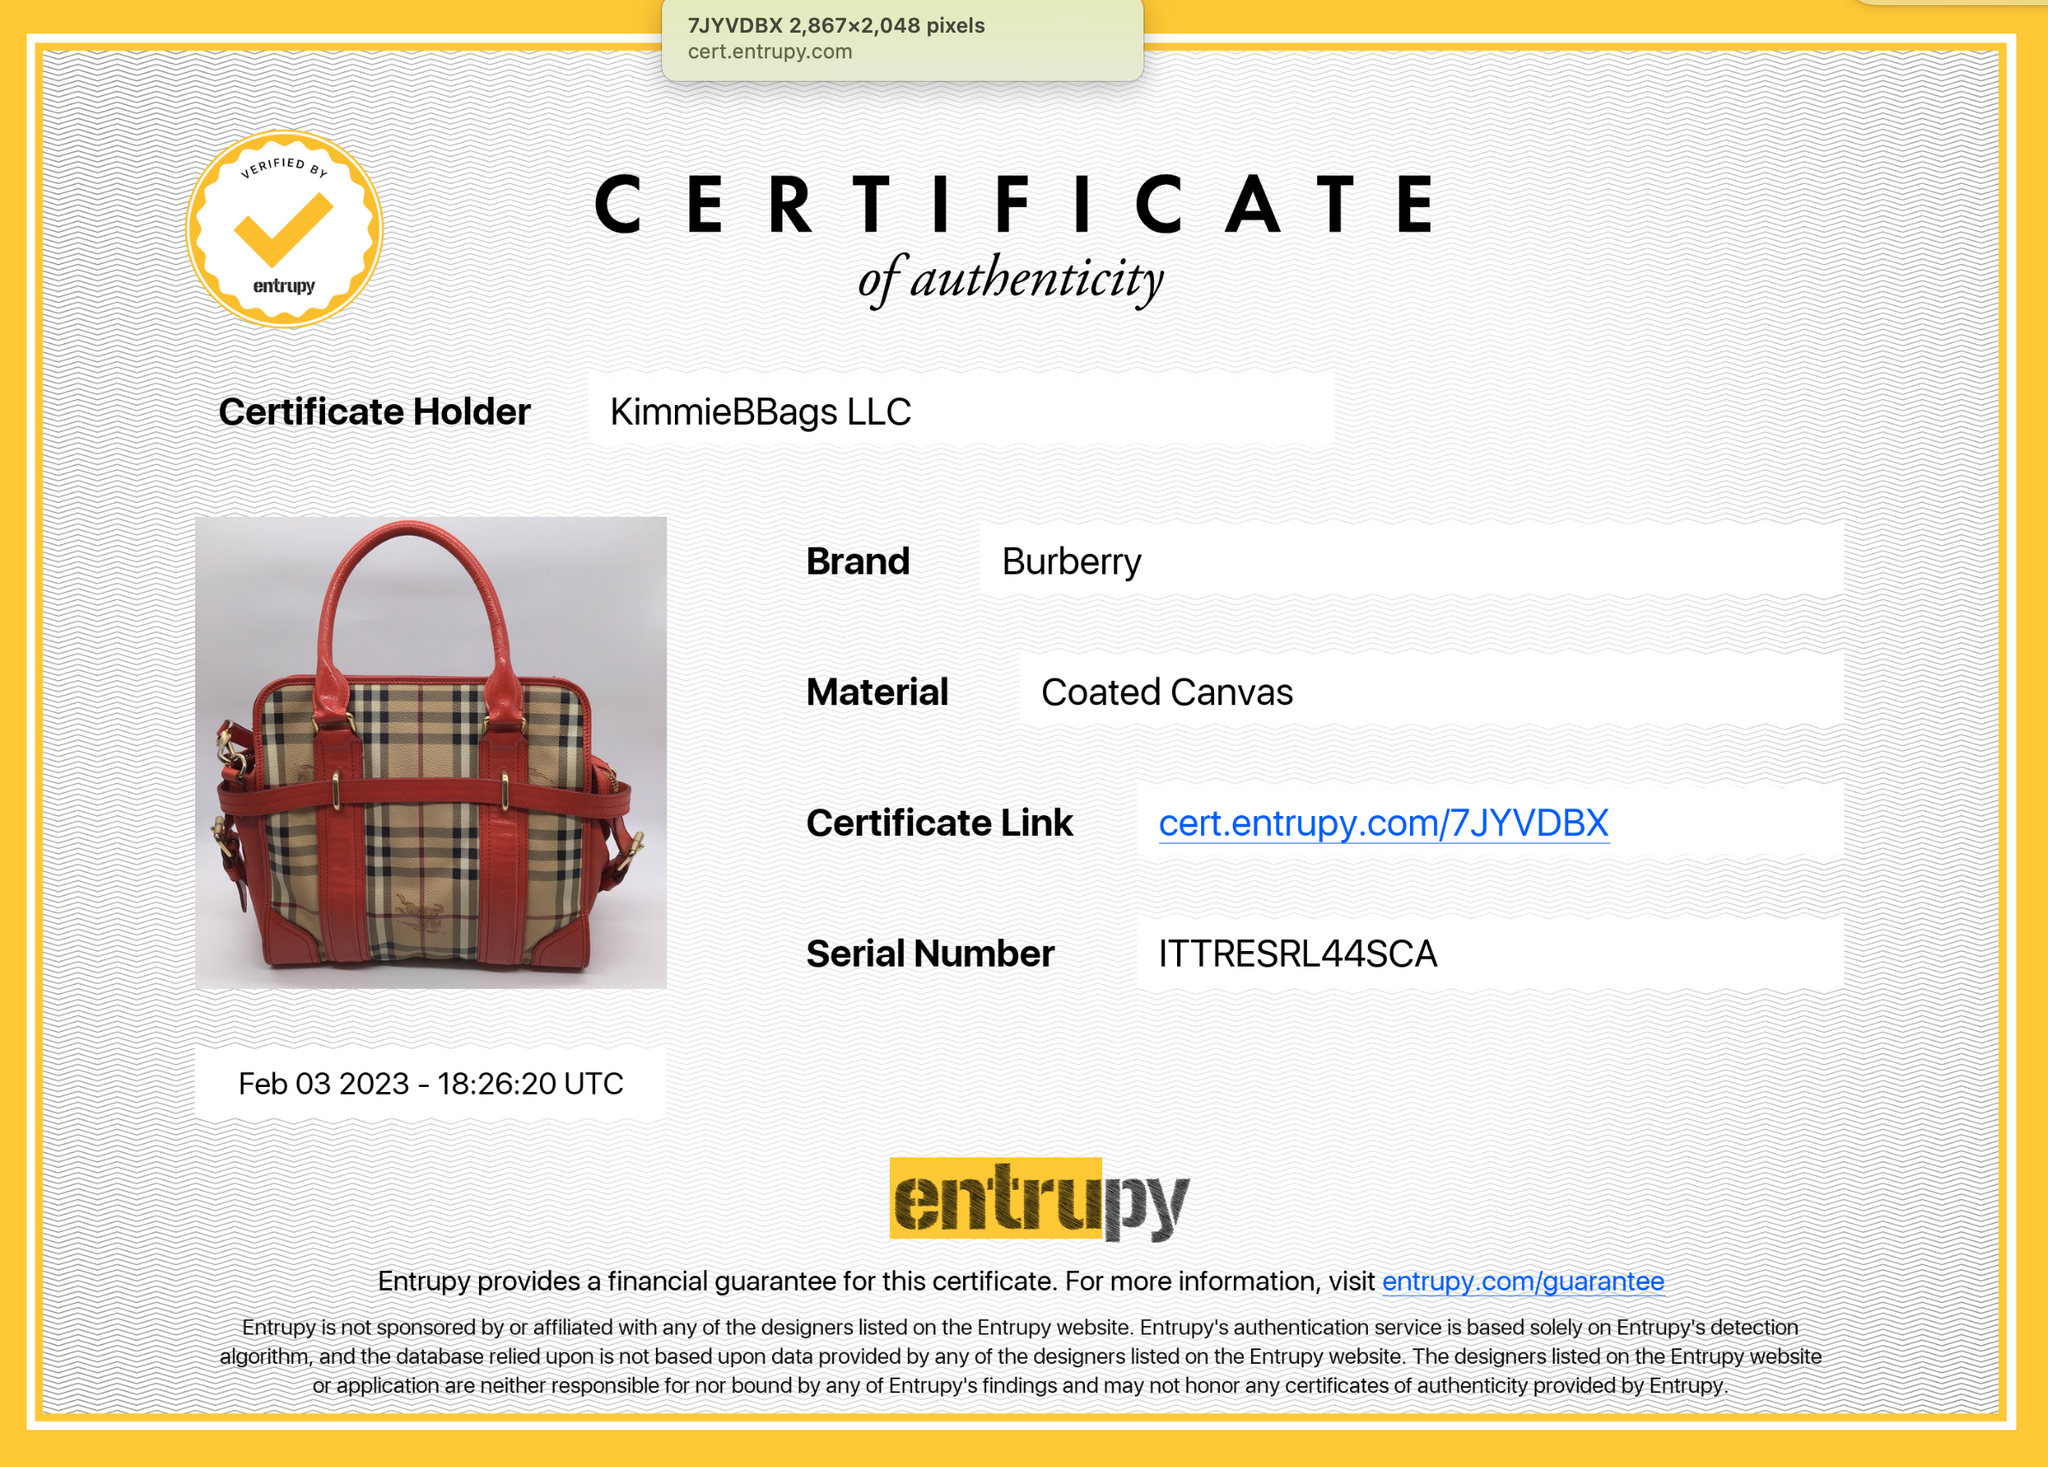 Burberry Authentication - Check Burberry Bag